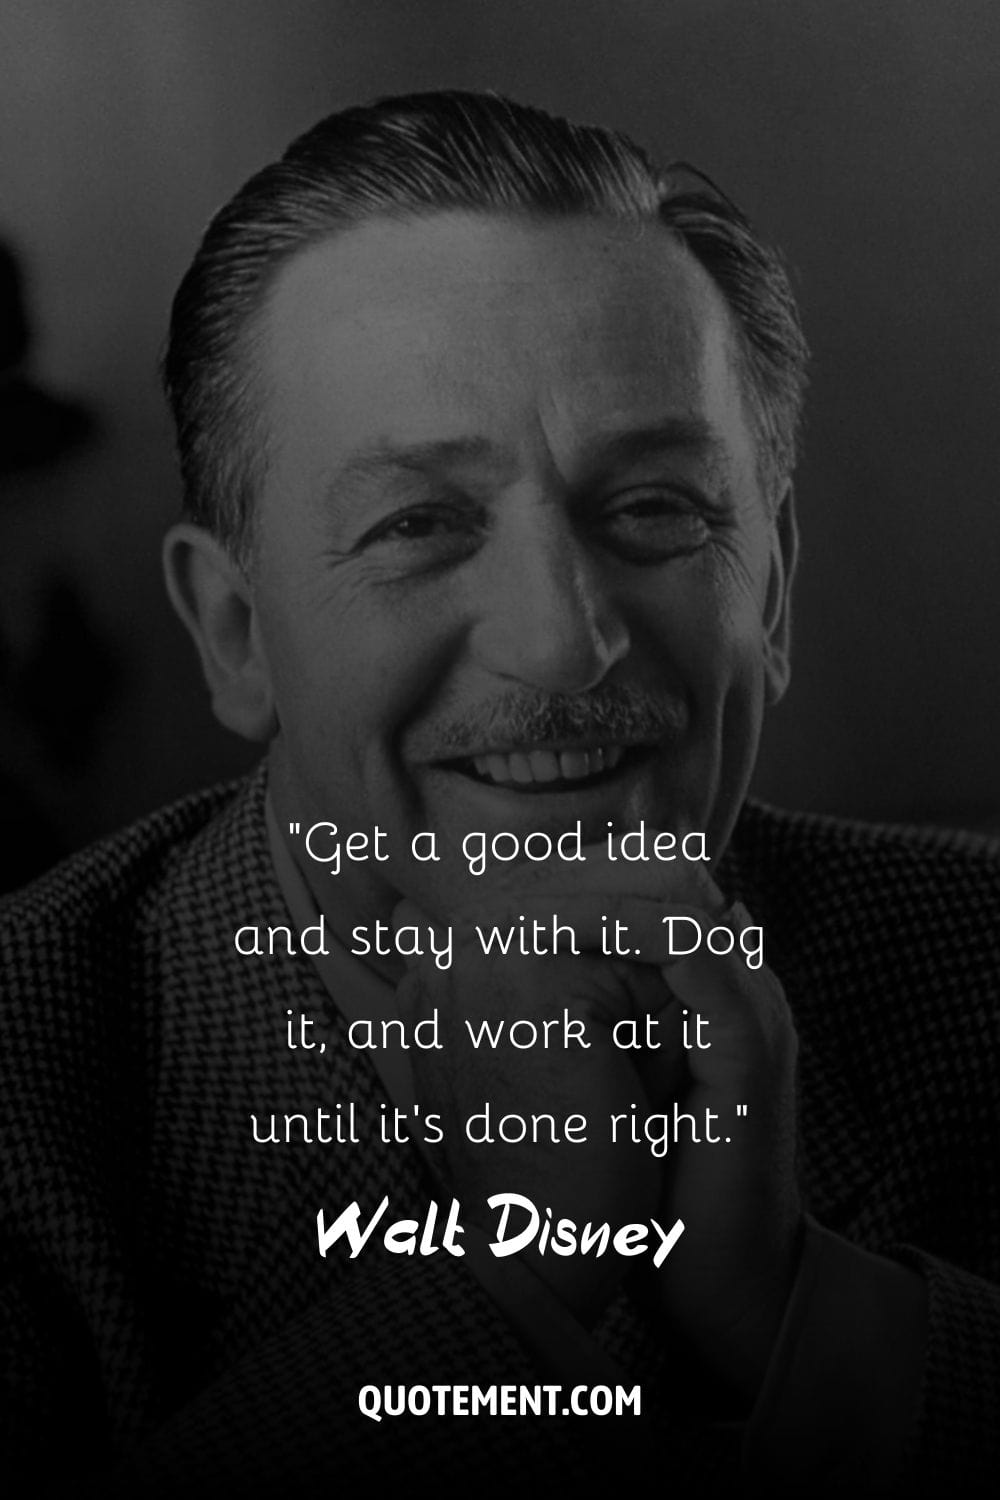 Retrato de un visionario Postura alegre de Walt Disney.